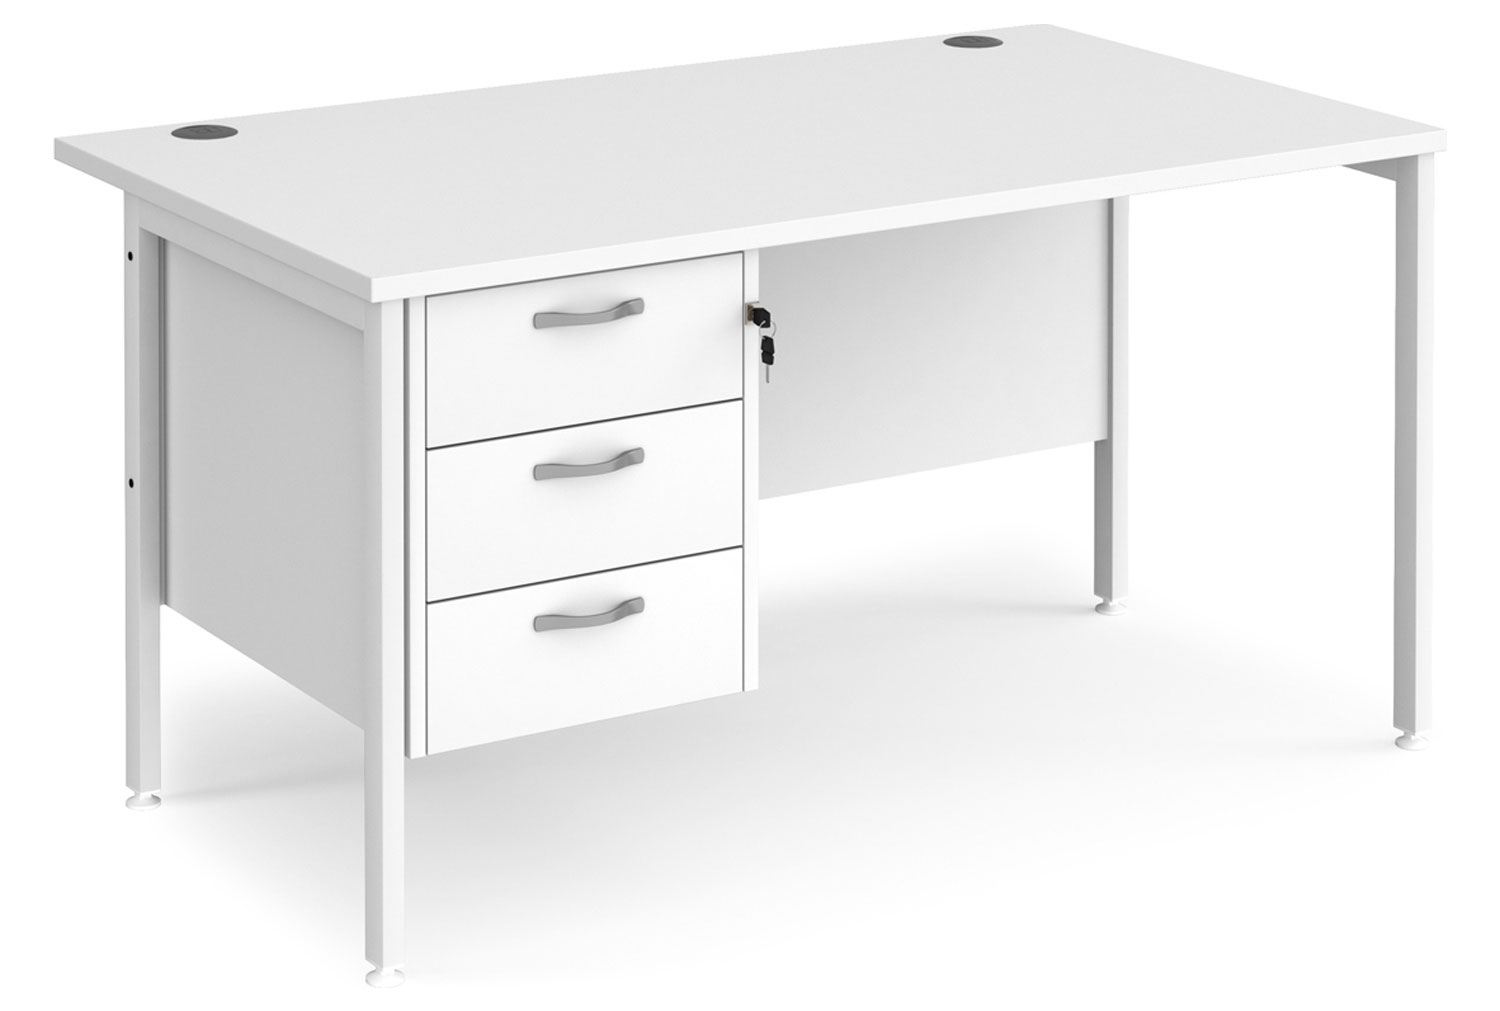 Value Line Deluxe H-Leg Rectangular Office Desk 3 Drawers (White Legs), 140wx80dx73h (cm), White, Fully Installed